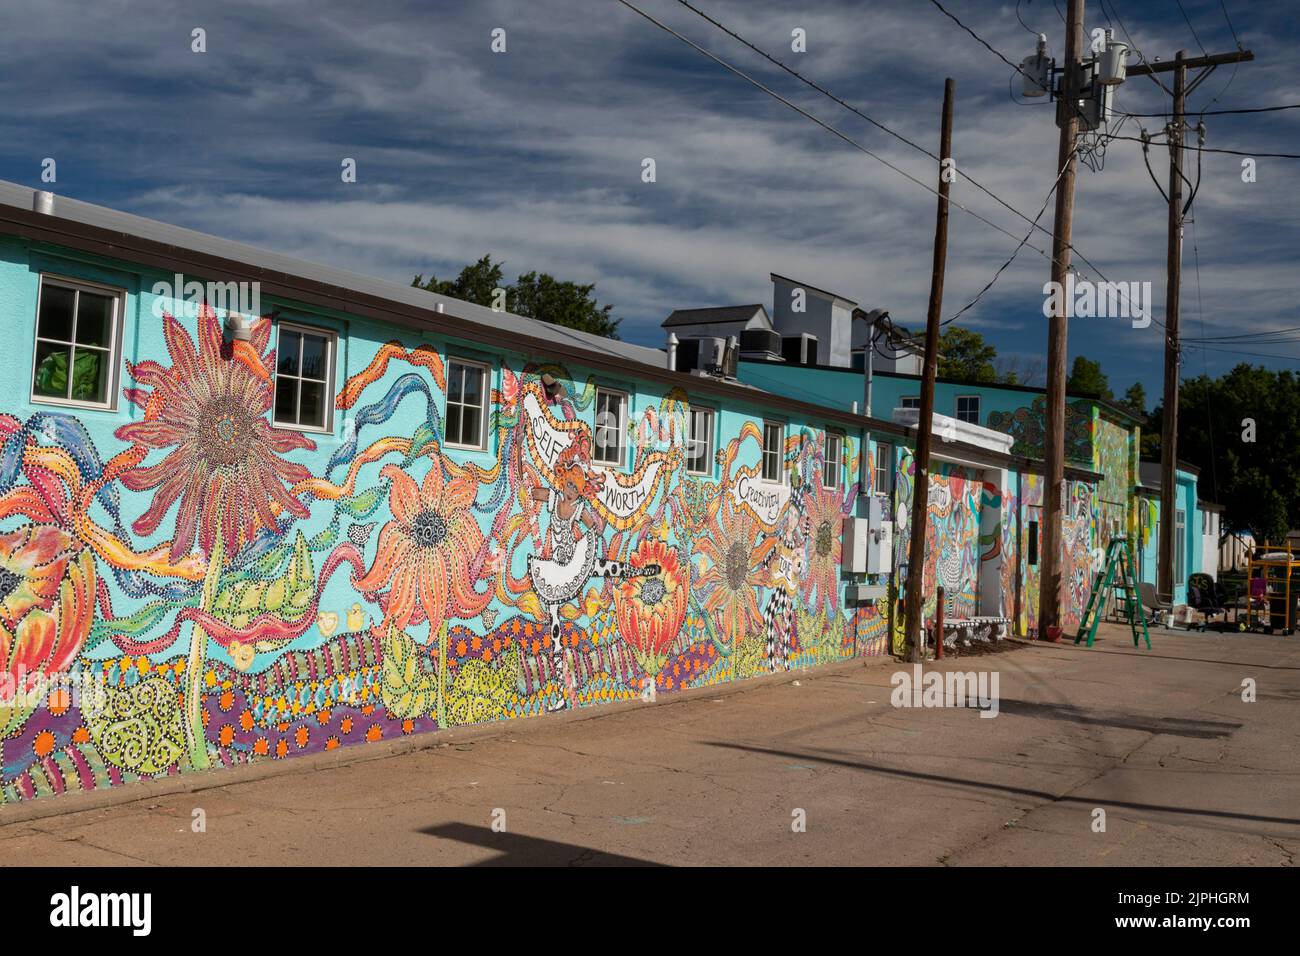 Hutchinson, Kansas - El mural 'Inspire' en un callejón en el centro de la ciudad promueve la autoestima y la creatividad. Fue pintado por Julie Black y Jocely Foto de stock